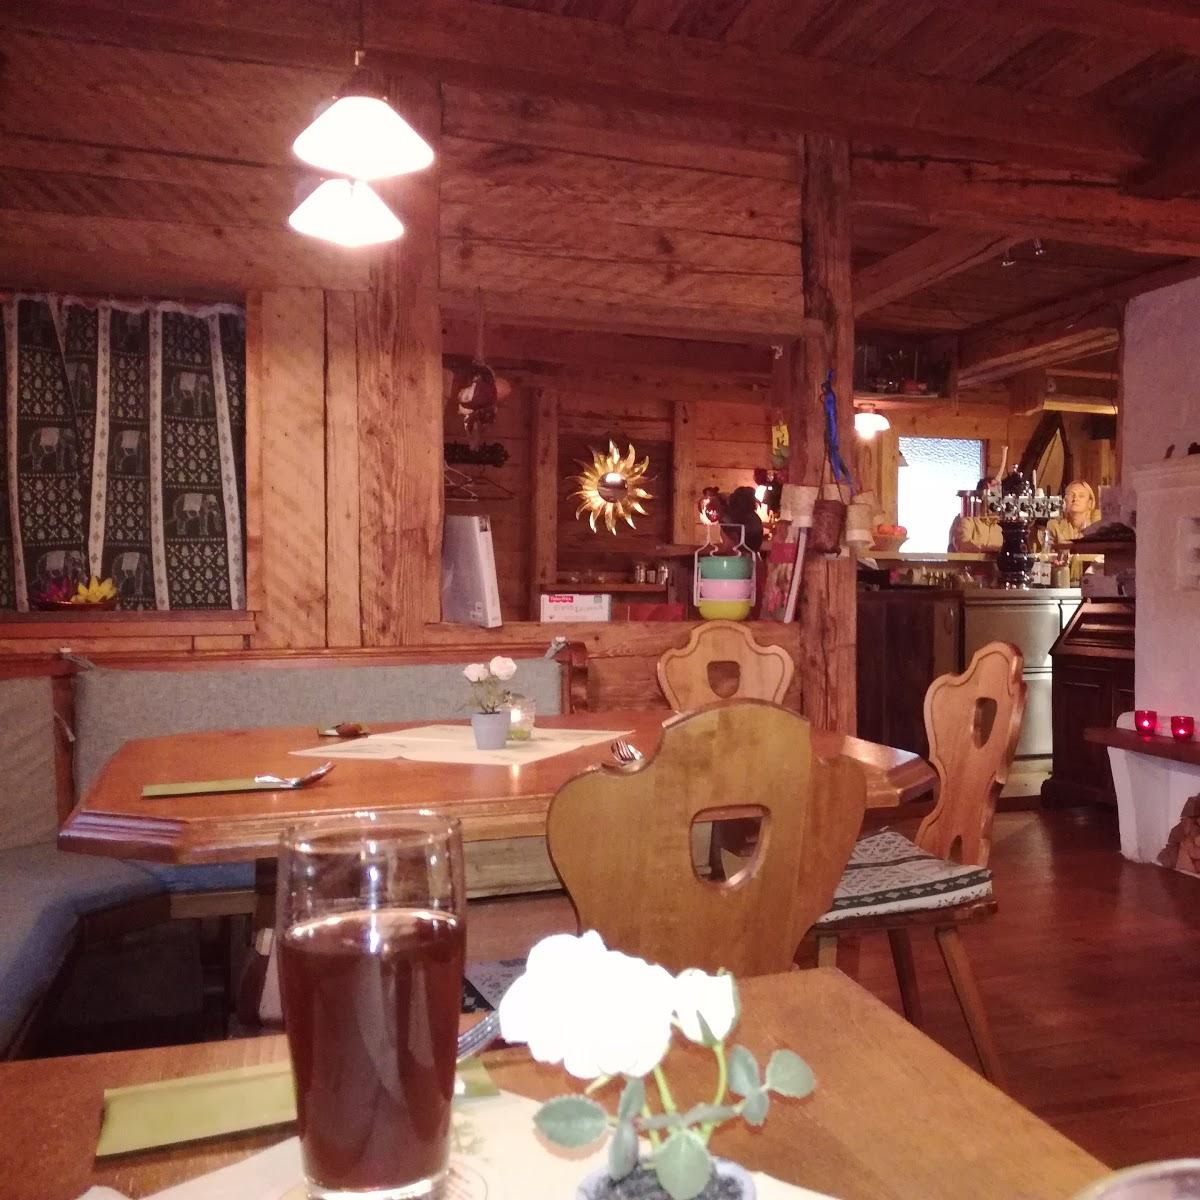 Restaurant "Thai Stadl" in Oberstaufen